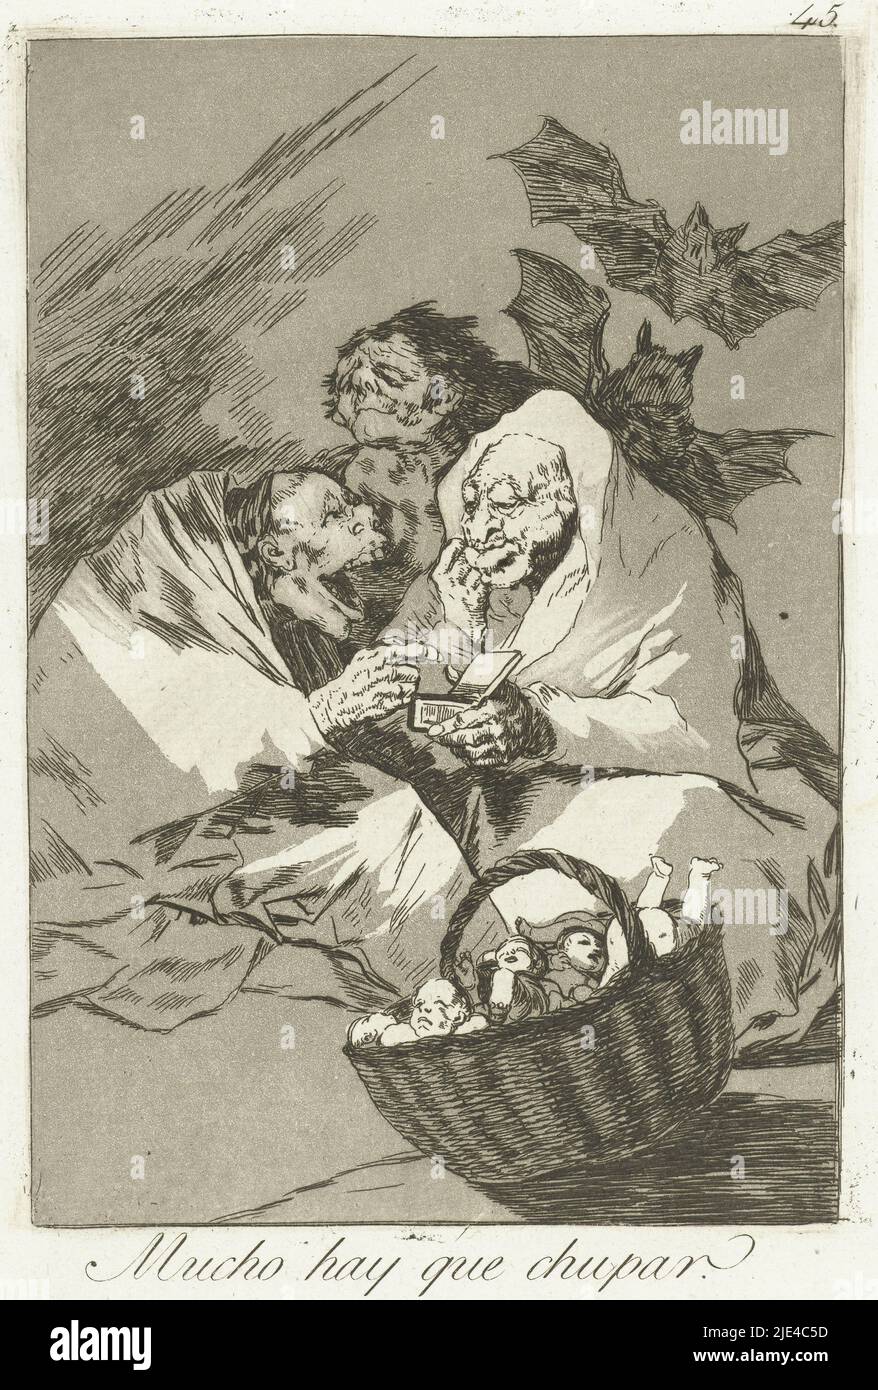 Hay mucho que chupar, Francisco de Goya, 1797 - 1799, tres brujas o figuras monstruosas, uno tiene una caja en su mano. Desde atrás, dos murciélagos se acercan; en primer plano hay una cesta llena de bebés. Cuarenta y cinco copias de la serie Los Caprichos, impresor: Francisco de Goya, Francisco de Goya, España, 1797 - 1799, papel, grabado, al. 205 mm x al. 150 mm Foto de stock